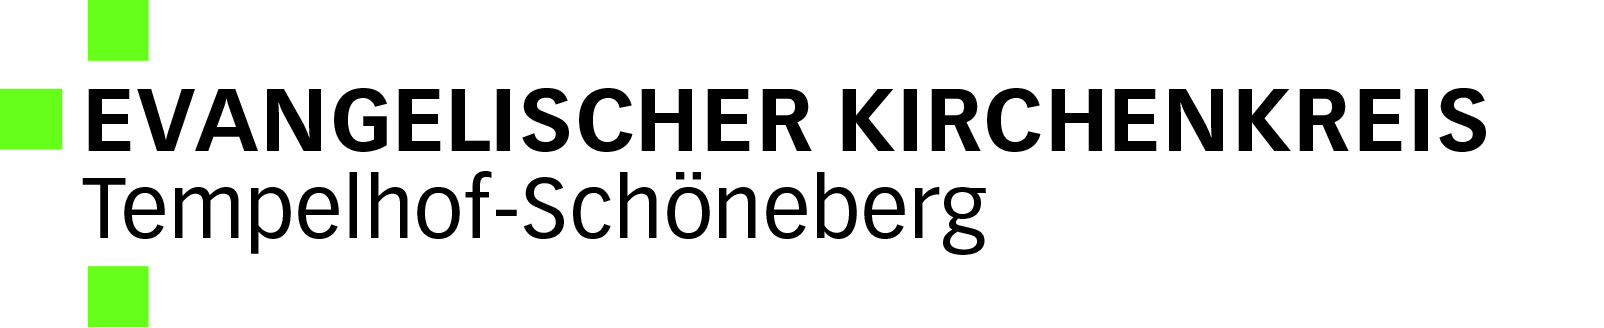 Logo: Evangelischer Kirchenkreis Tempelhof-Schöneberg